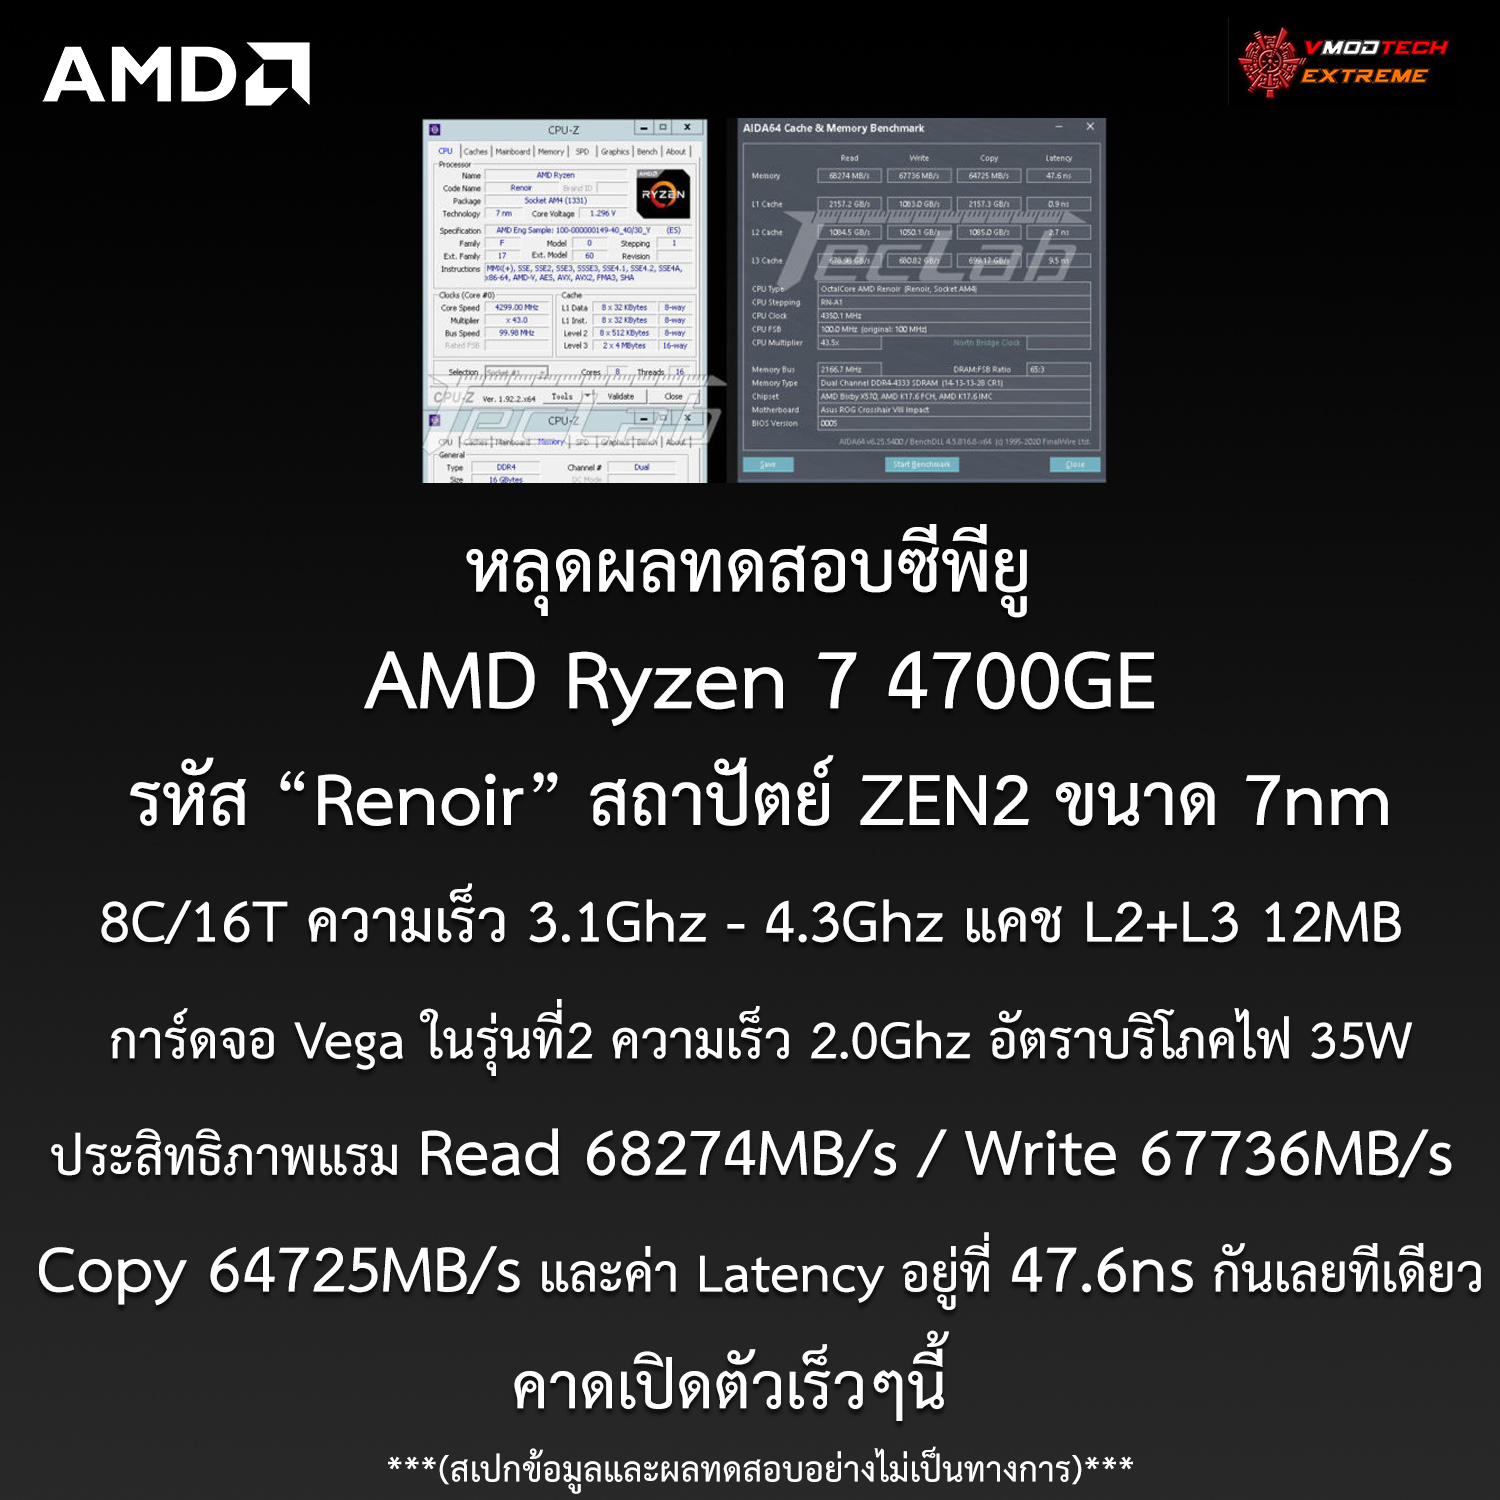 หลุดผลทดสอบซีพียู AMD Ryzen 7 4700GE ในรหัส Renoir ที่มีการ์ดจอในตัว APU รุ่นใหม่ล่าสุดอย่างไม่เป็นทางการ 